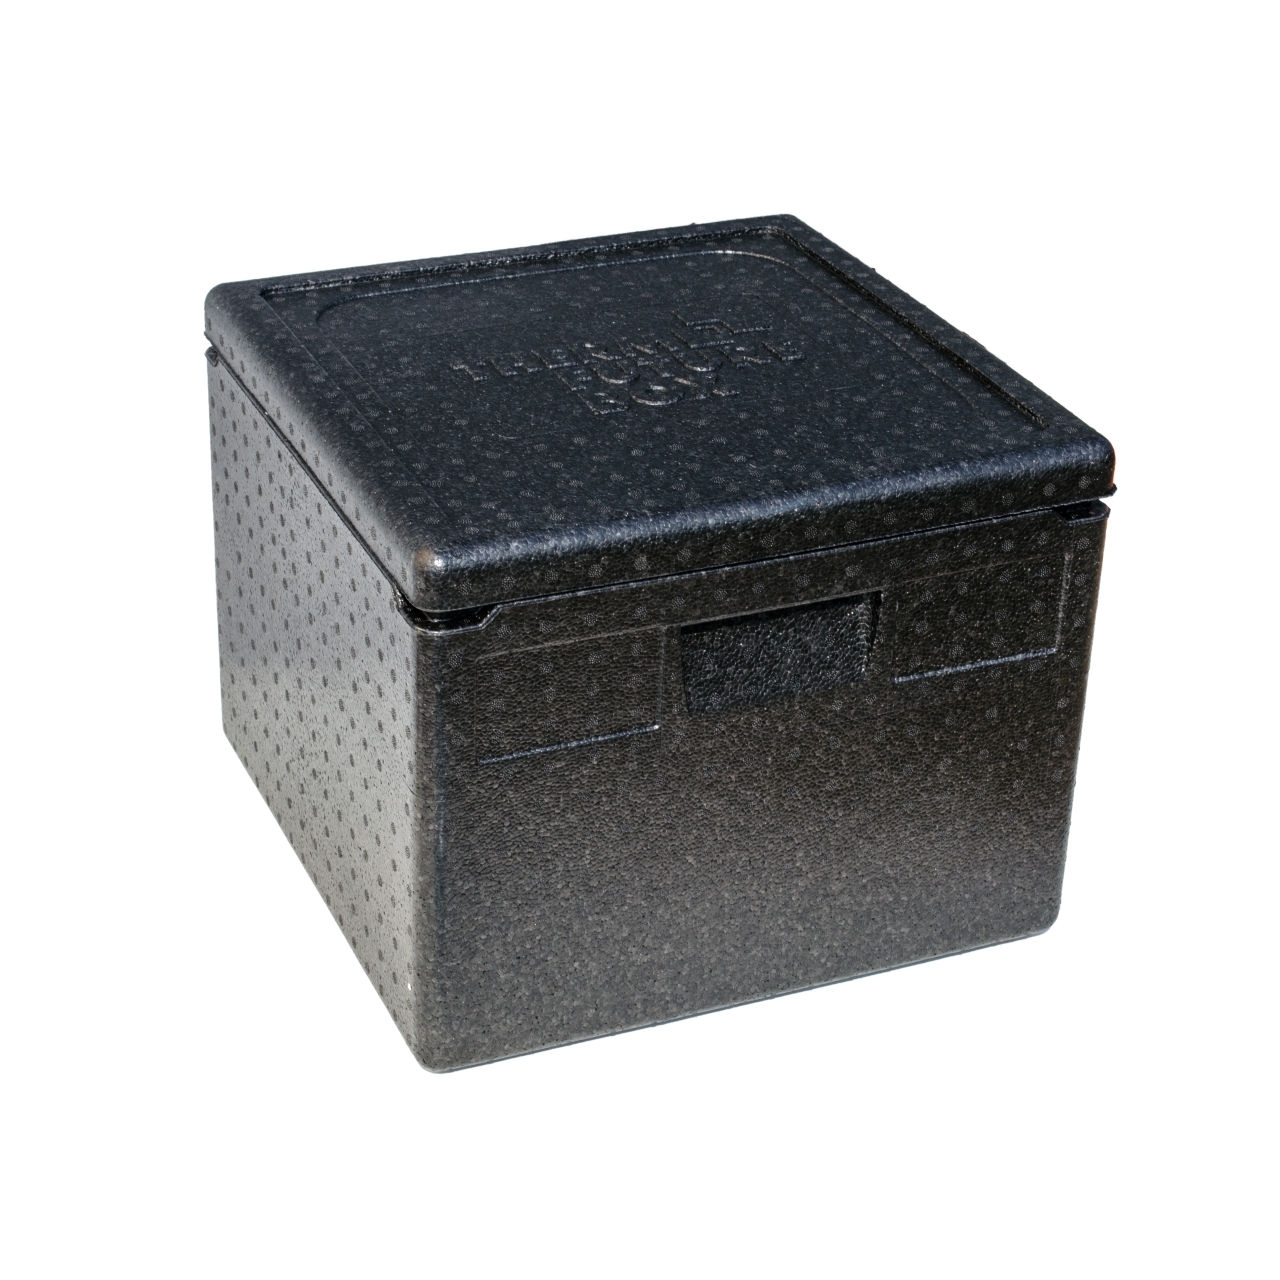 ThermoBox schwarz, 12063, Innen 350 x 350 x 330 mm, für Essen